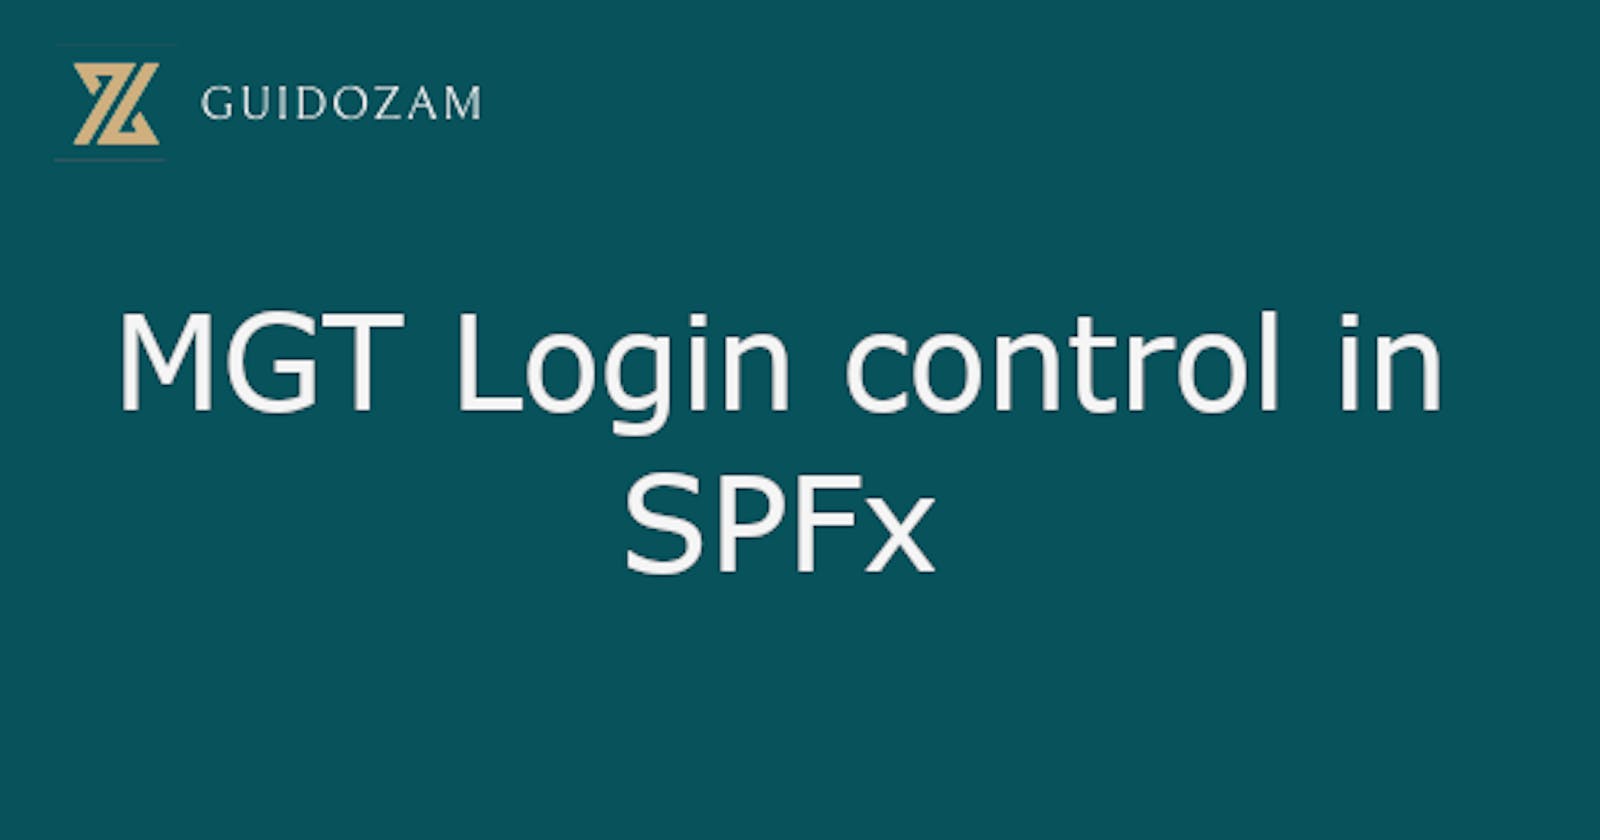 MGT Login control in SPFx